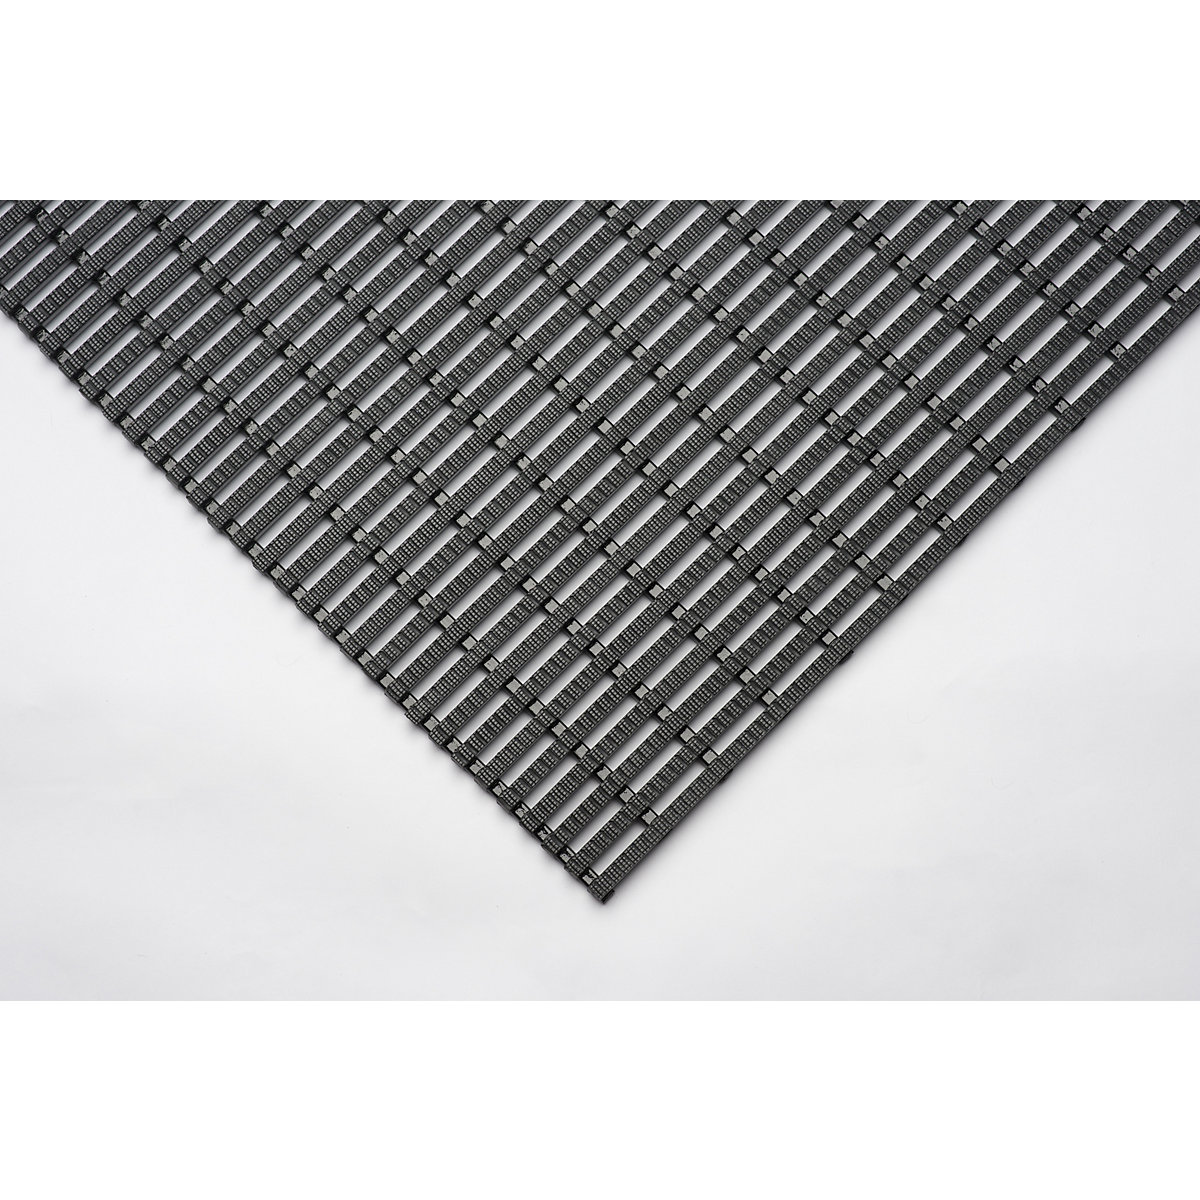 Industrial matting, anti-slip, 10 m roll, black, width 600 mm